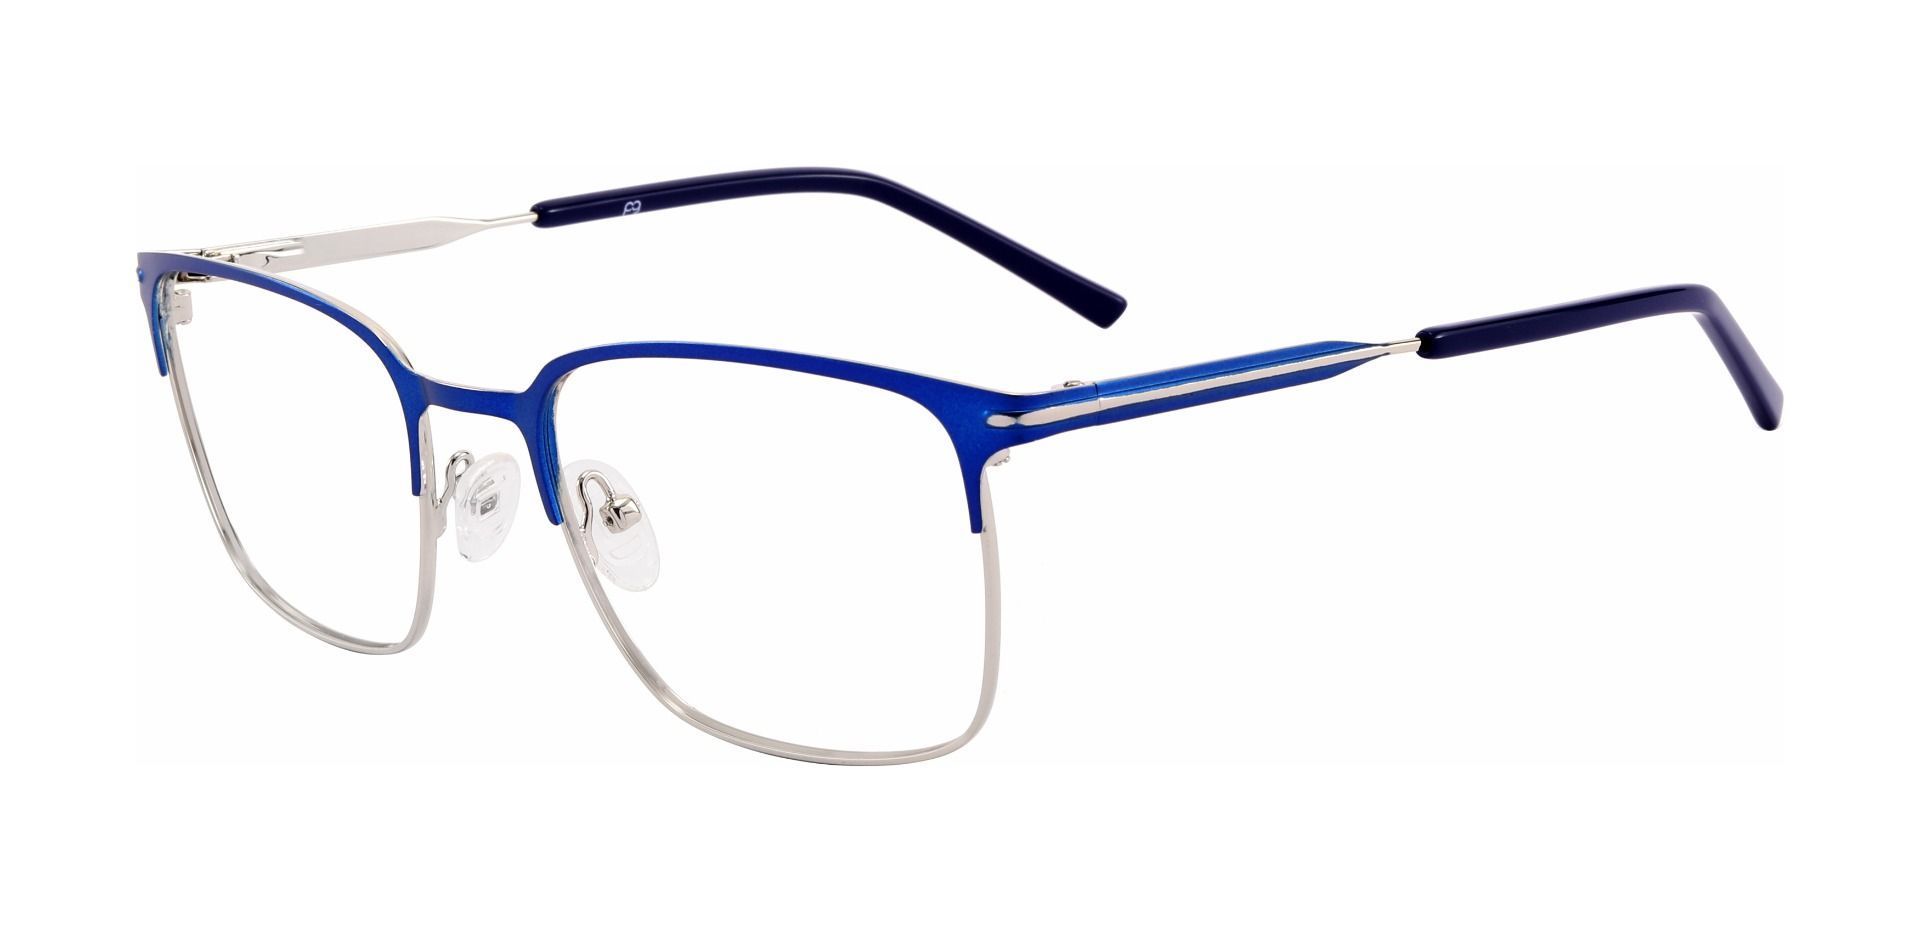 Rucker Rectangle Eyeglasses Frame - Blue